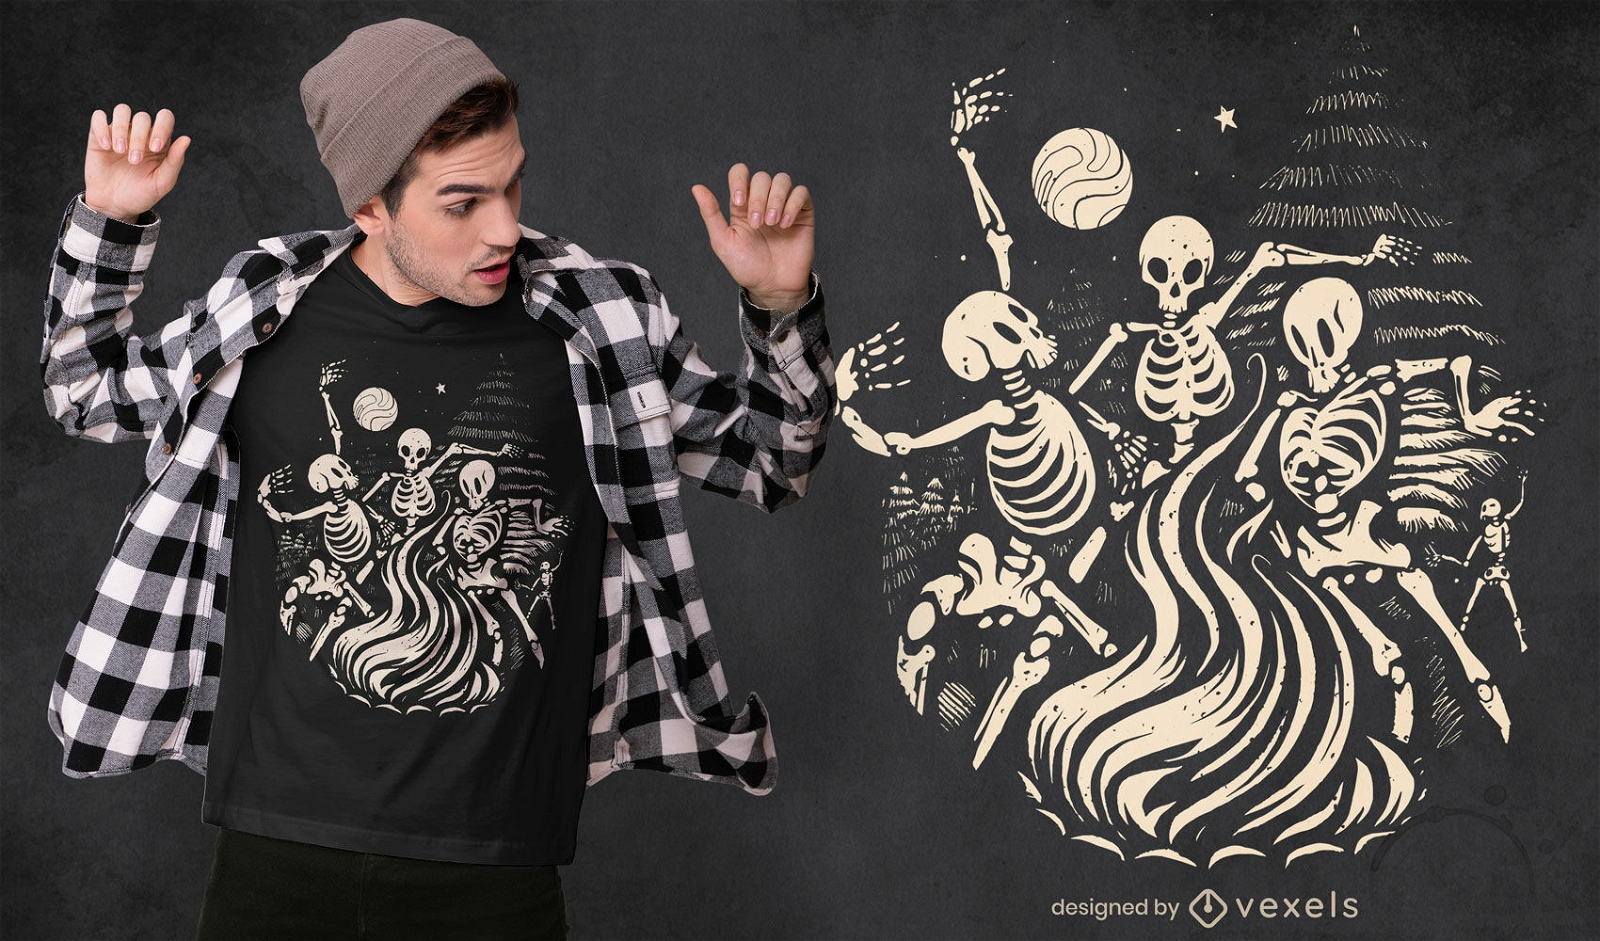 Skelette, die auf Lagerfeuer-T-Shirt-Design tanzen